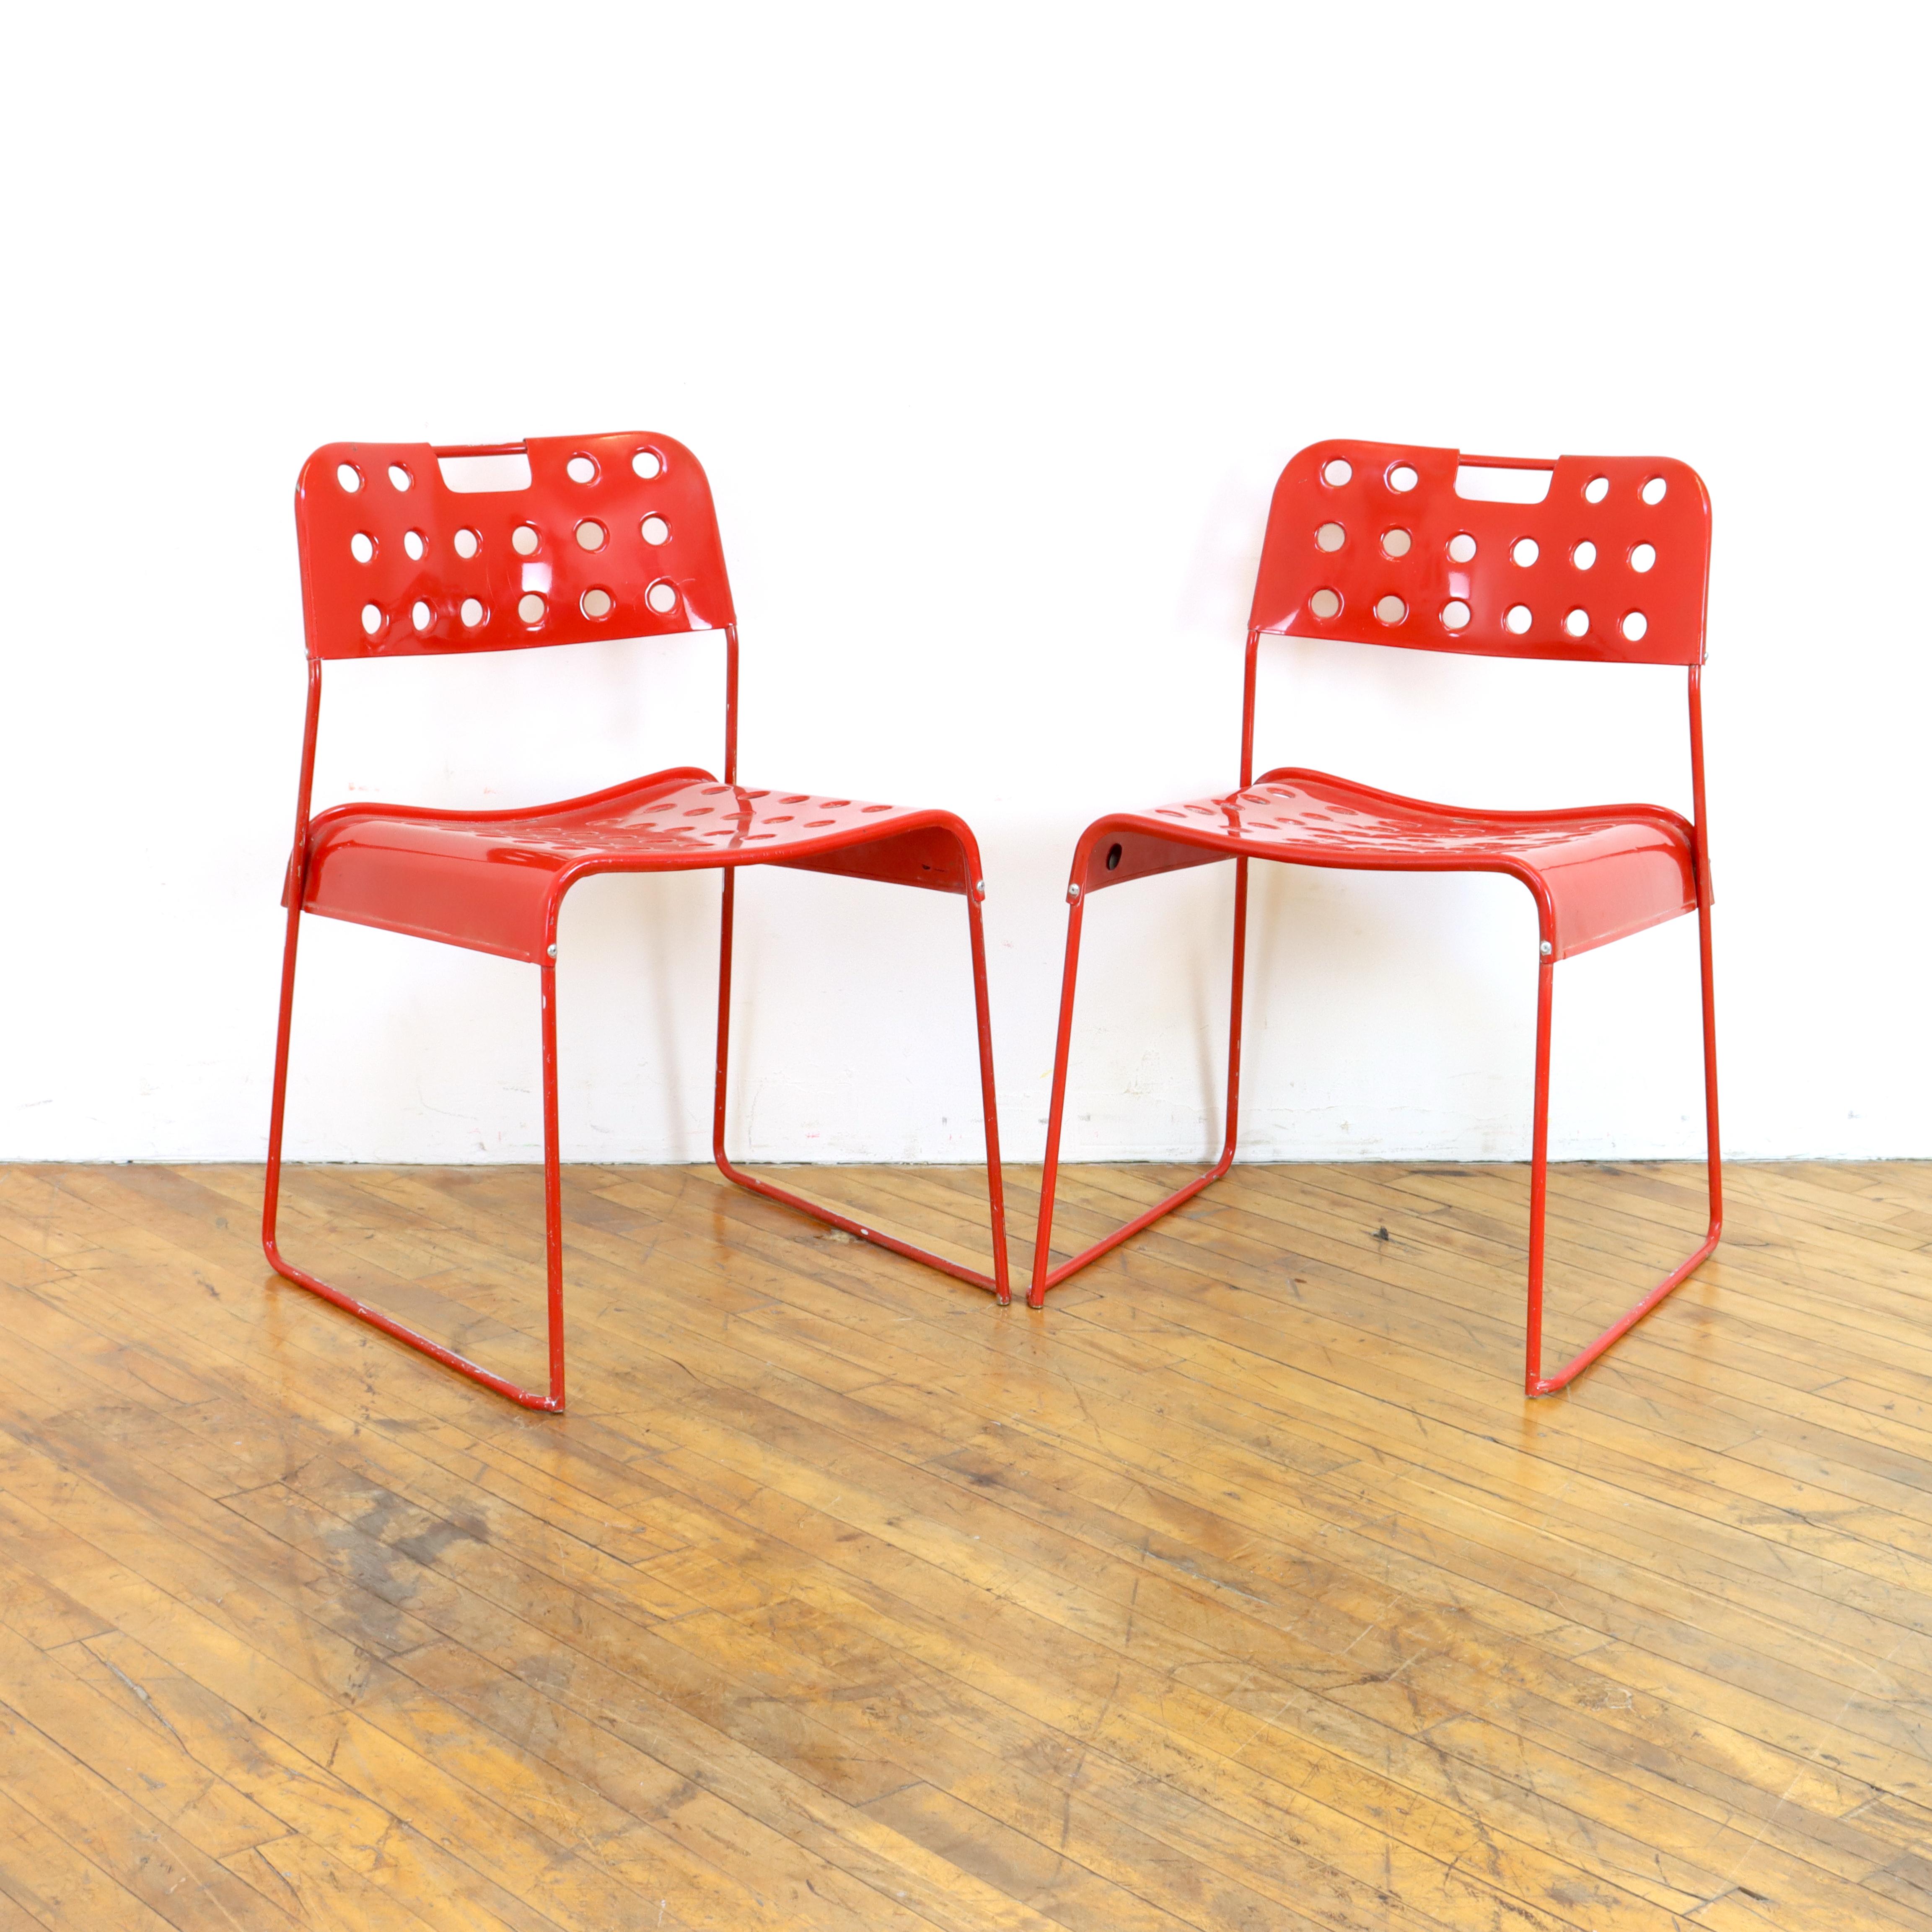 Paire de chaises Omkstak vintage des années 1970 en rouge par Rodney Kingsman pour Bieffeplast. Cadre métallique et perforé 
siège et dossier en métal, revêtement en poudre.  Comme leur nom l'indique, ils s'empilent également.  Peut être utilisé à